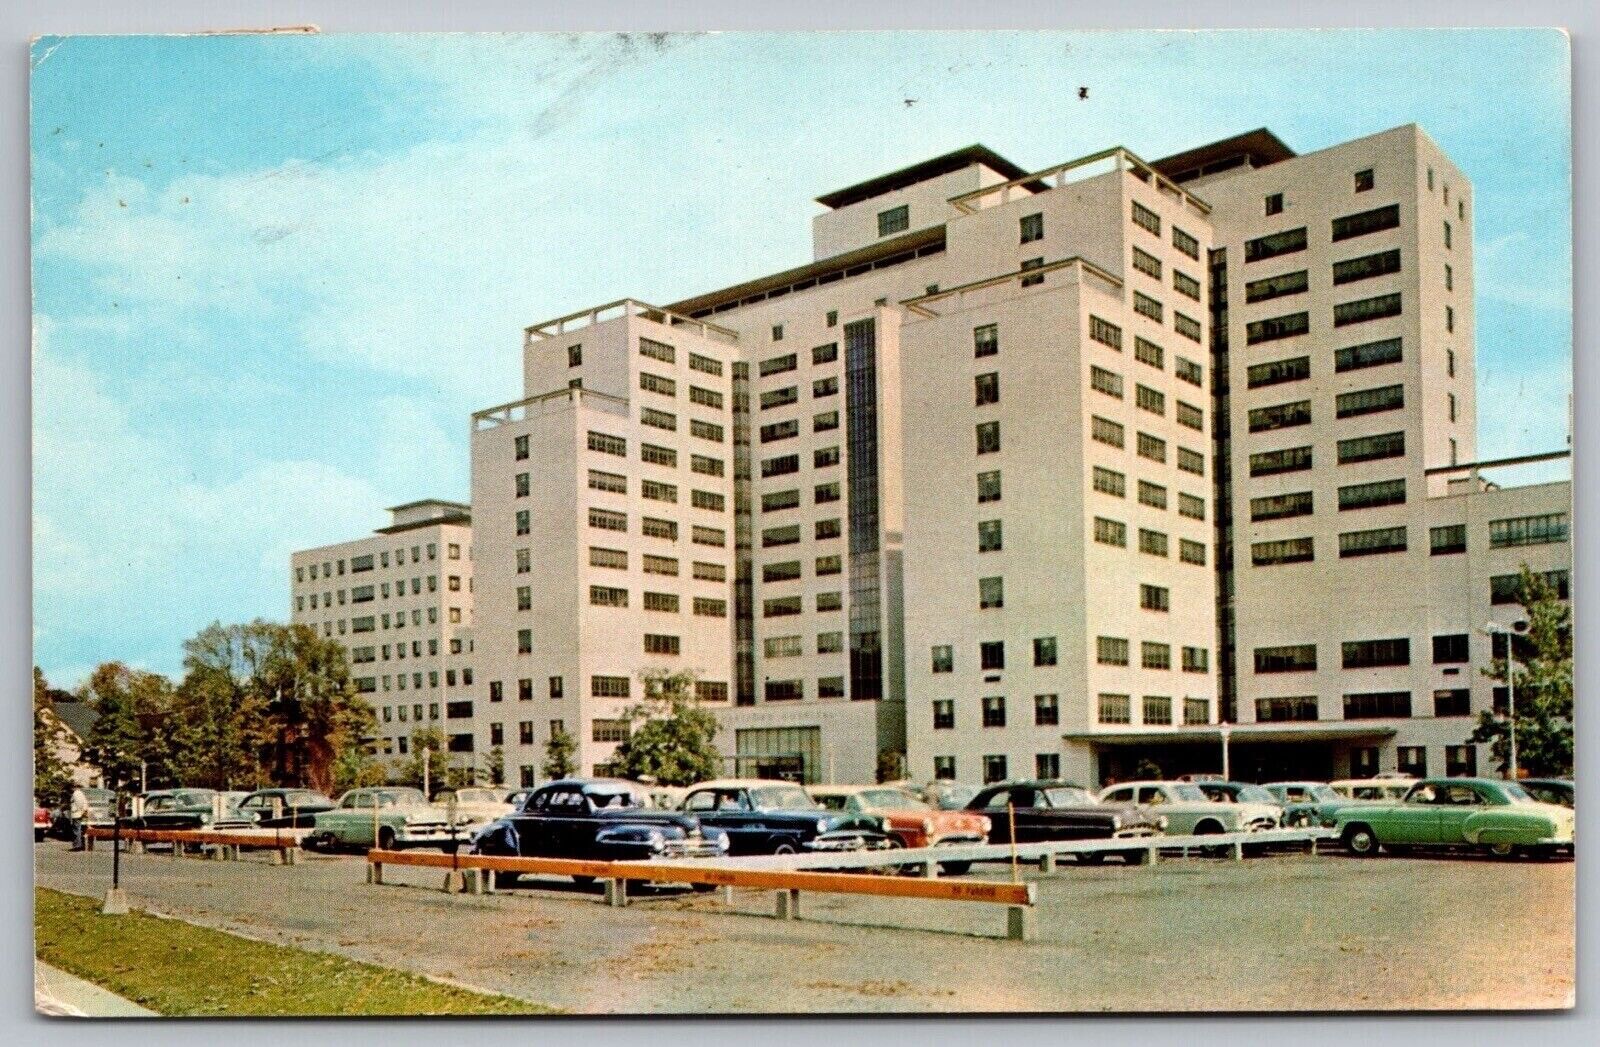 Hartford Hospital Connecticut Medical Center Old Cars Street View VNG Postcard